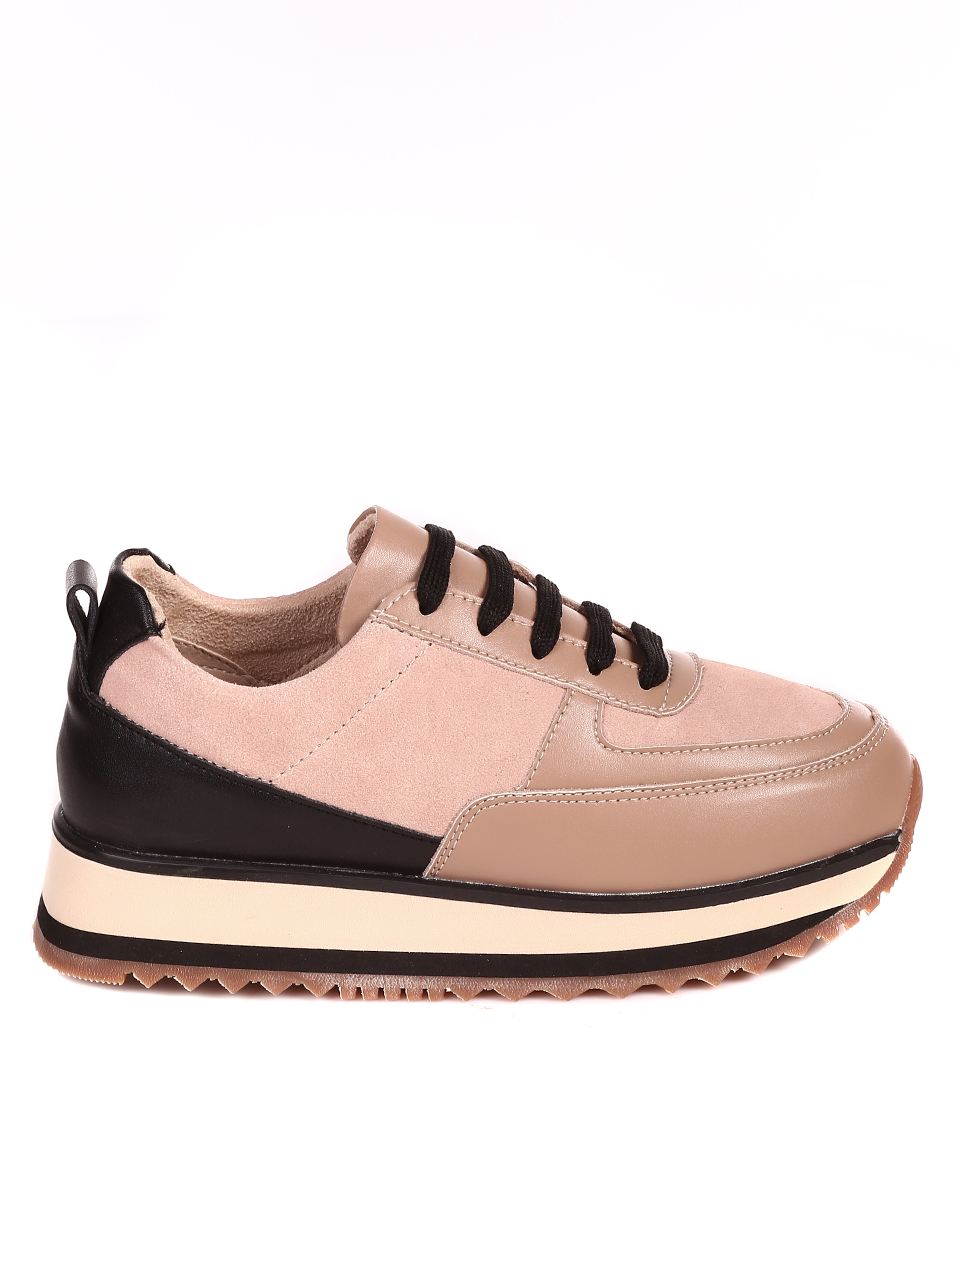 Ежедневни дамски обувки на платформа от естествена кожа 3AF-22667 beige/black